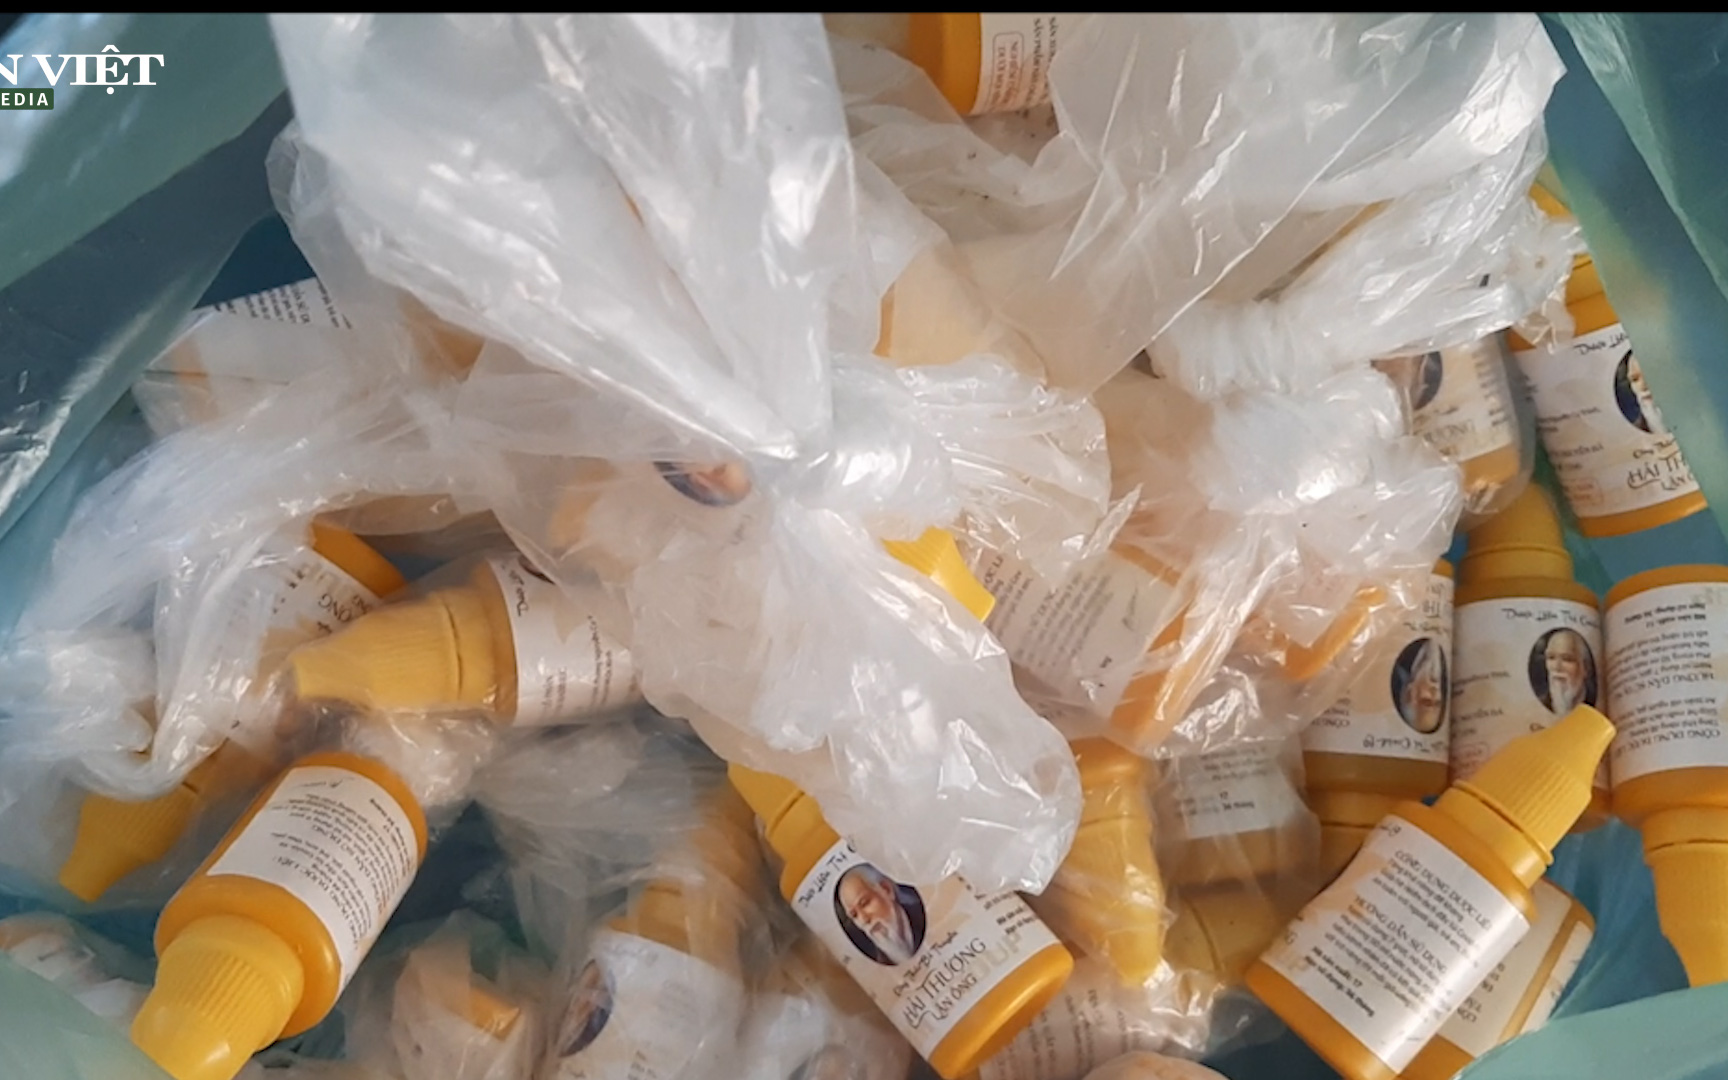 Phú Thọ: Xuất hiện dược liệu lạ được ném vào nhà dân